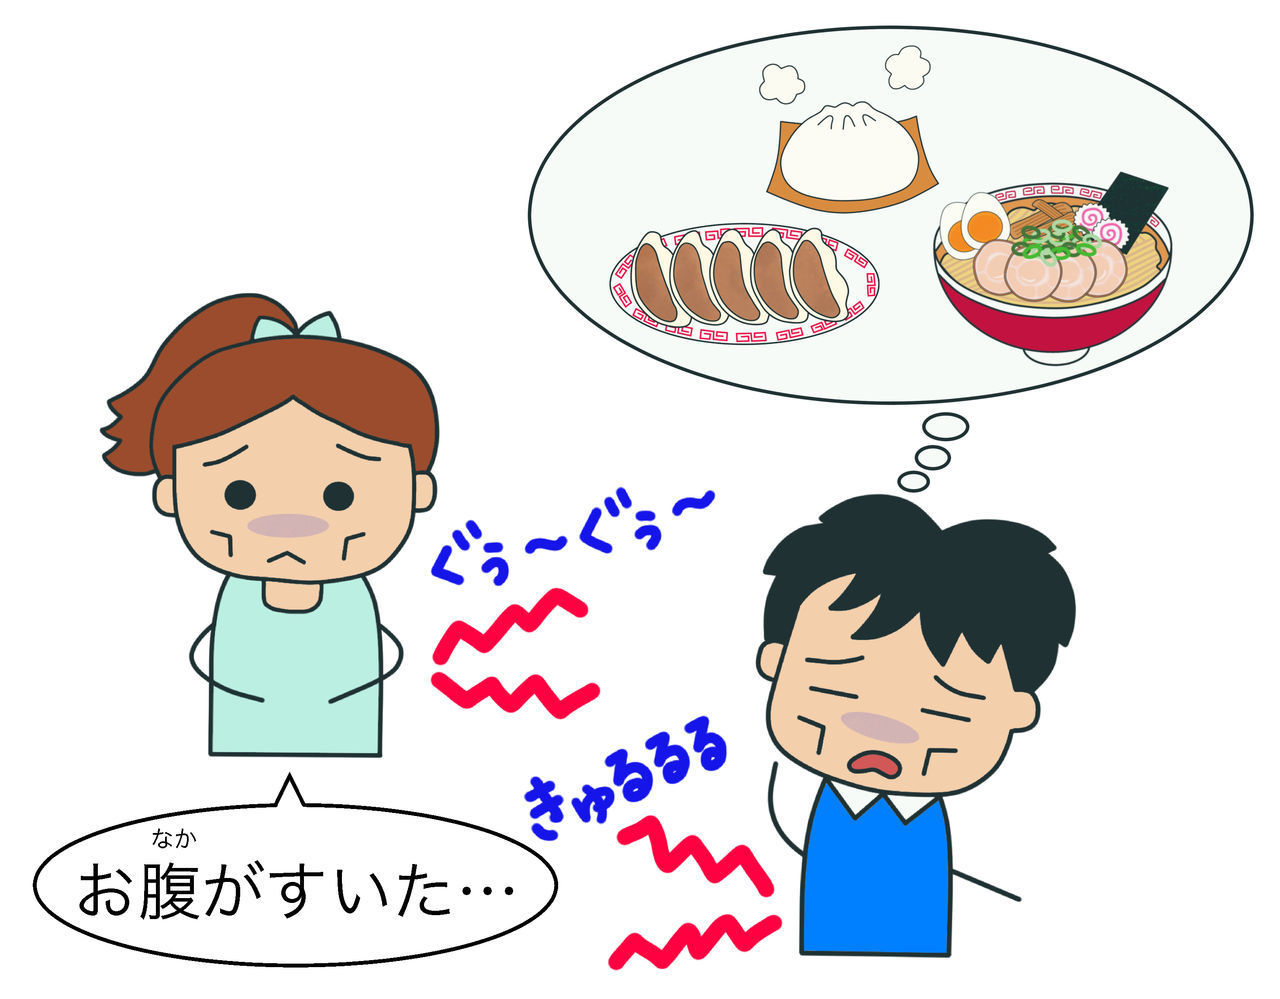 お腹がすいた時の音 絵でわかる日本語